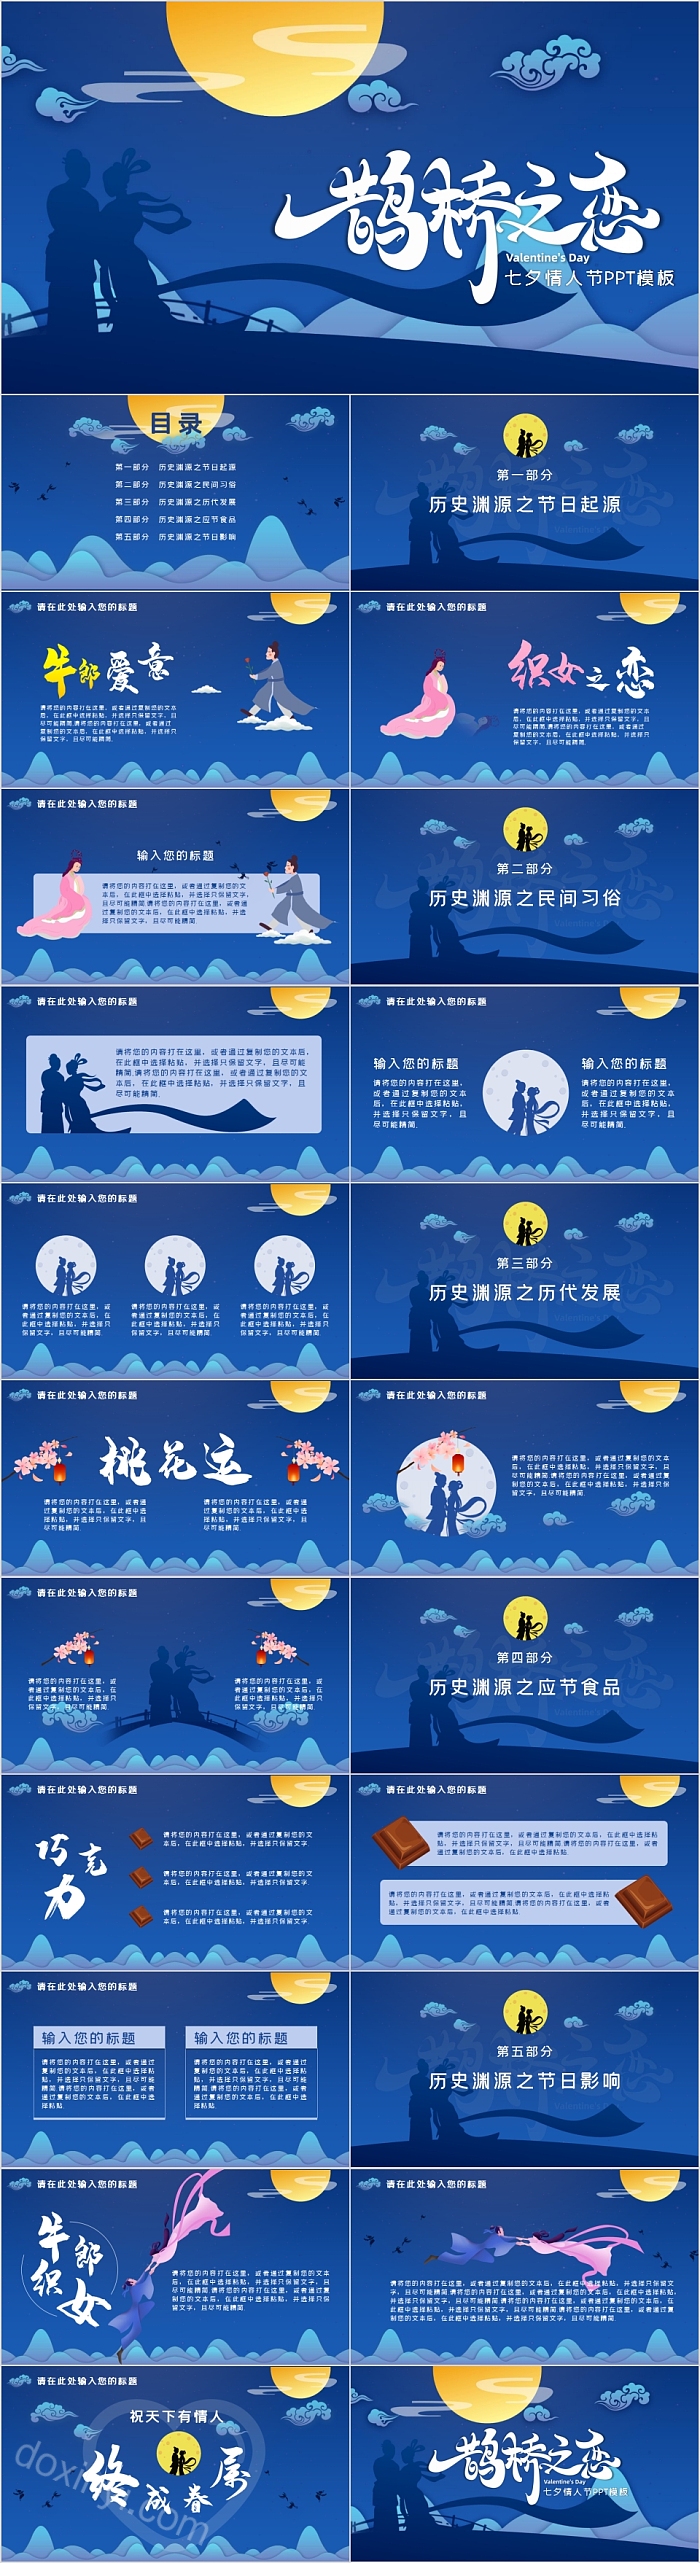 鹊桥之恋七夕情人节活动策划PPT模板